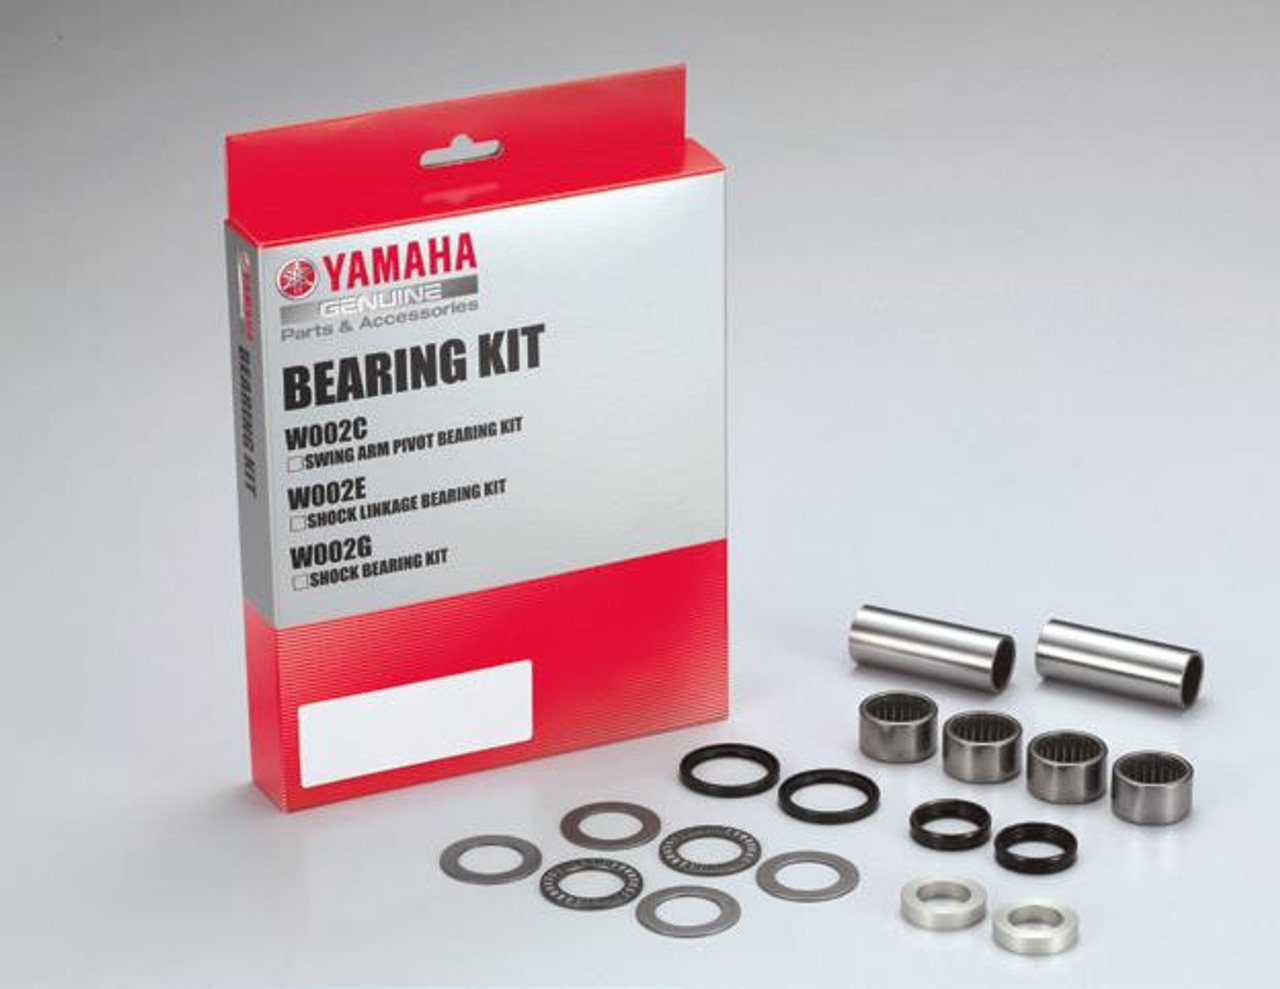 Yamaha New OEM Swing Arm Pivot Bearing Kit, 1SN-W002C-00-00